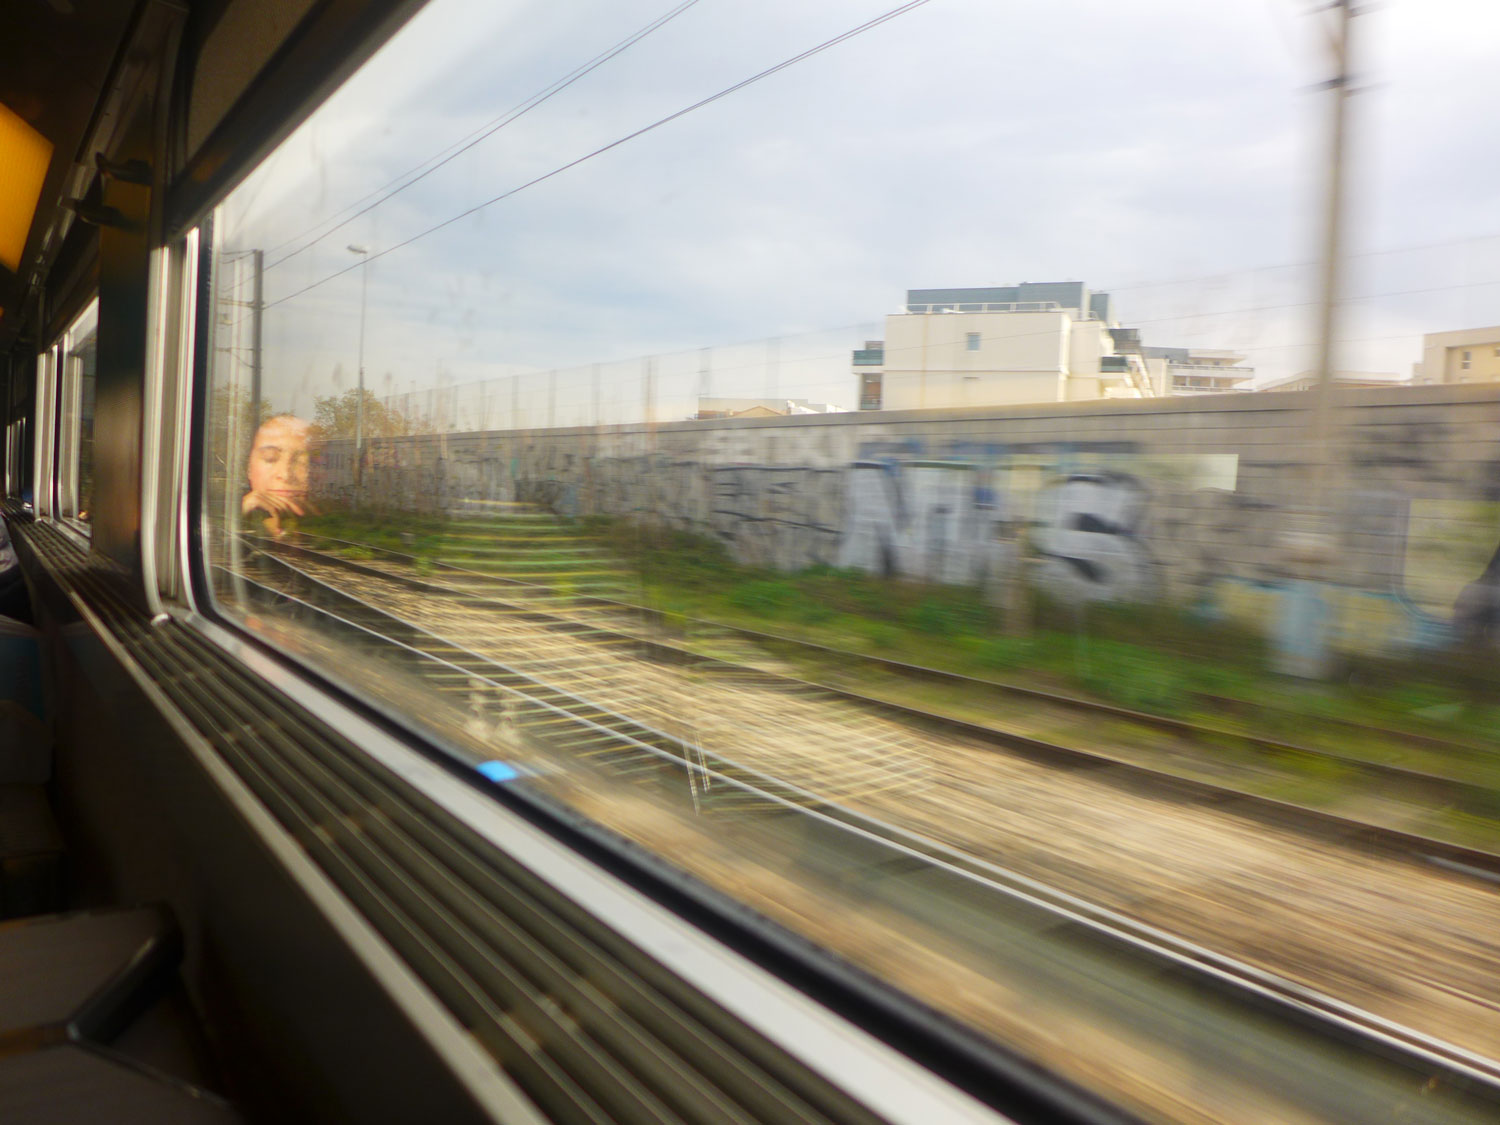 Les voyageurs font la sieste, alors que le train traverse la banlieue parisienne. Un long trajet de 3 heures les attend.